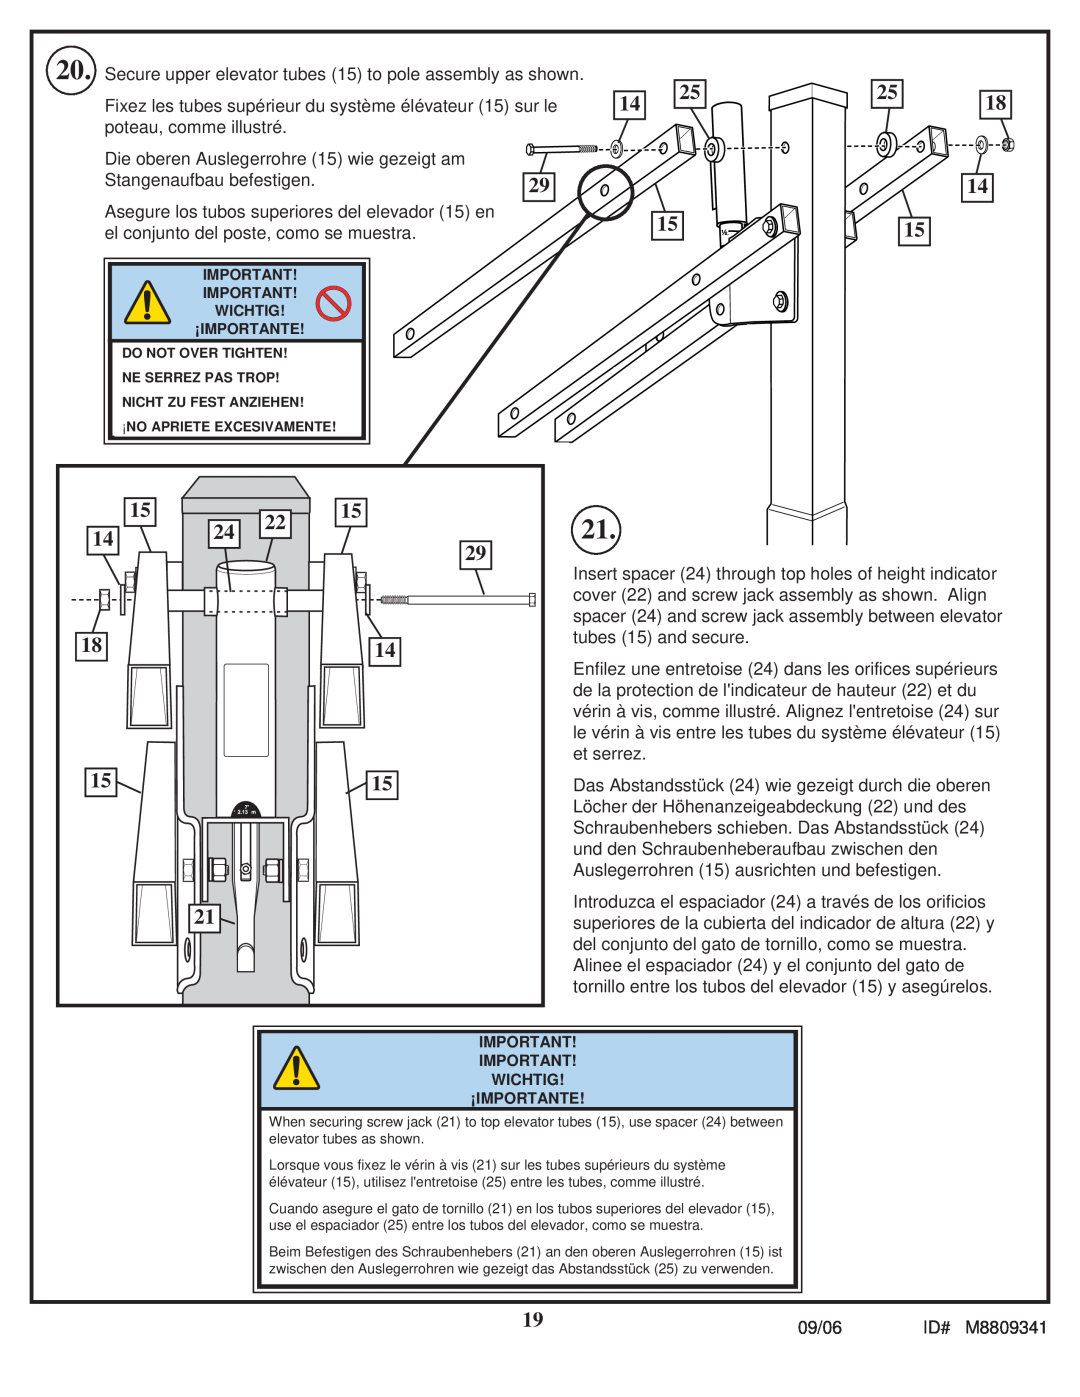 Spalding M8809341 manual Fixez les tubes supérieur du système élévateur 15 sur le, poteau, comme illustré 